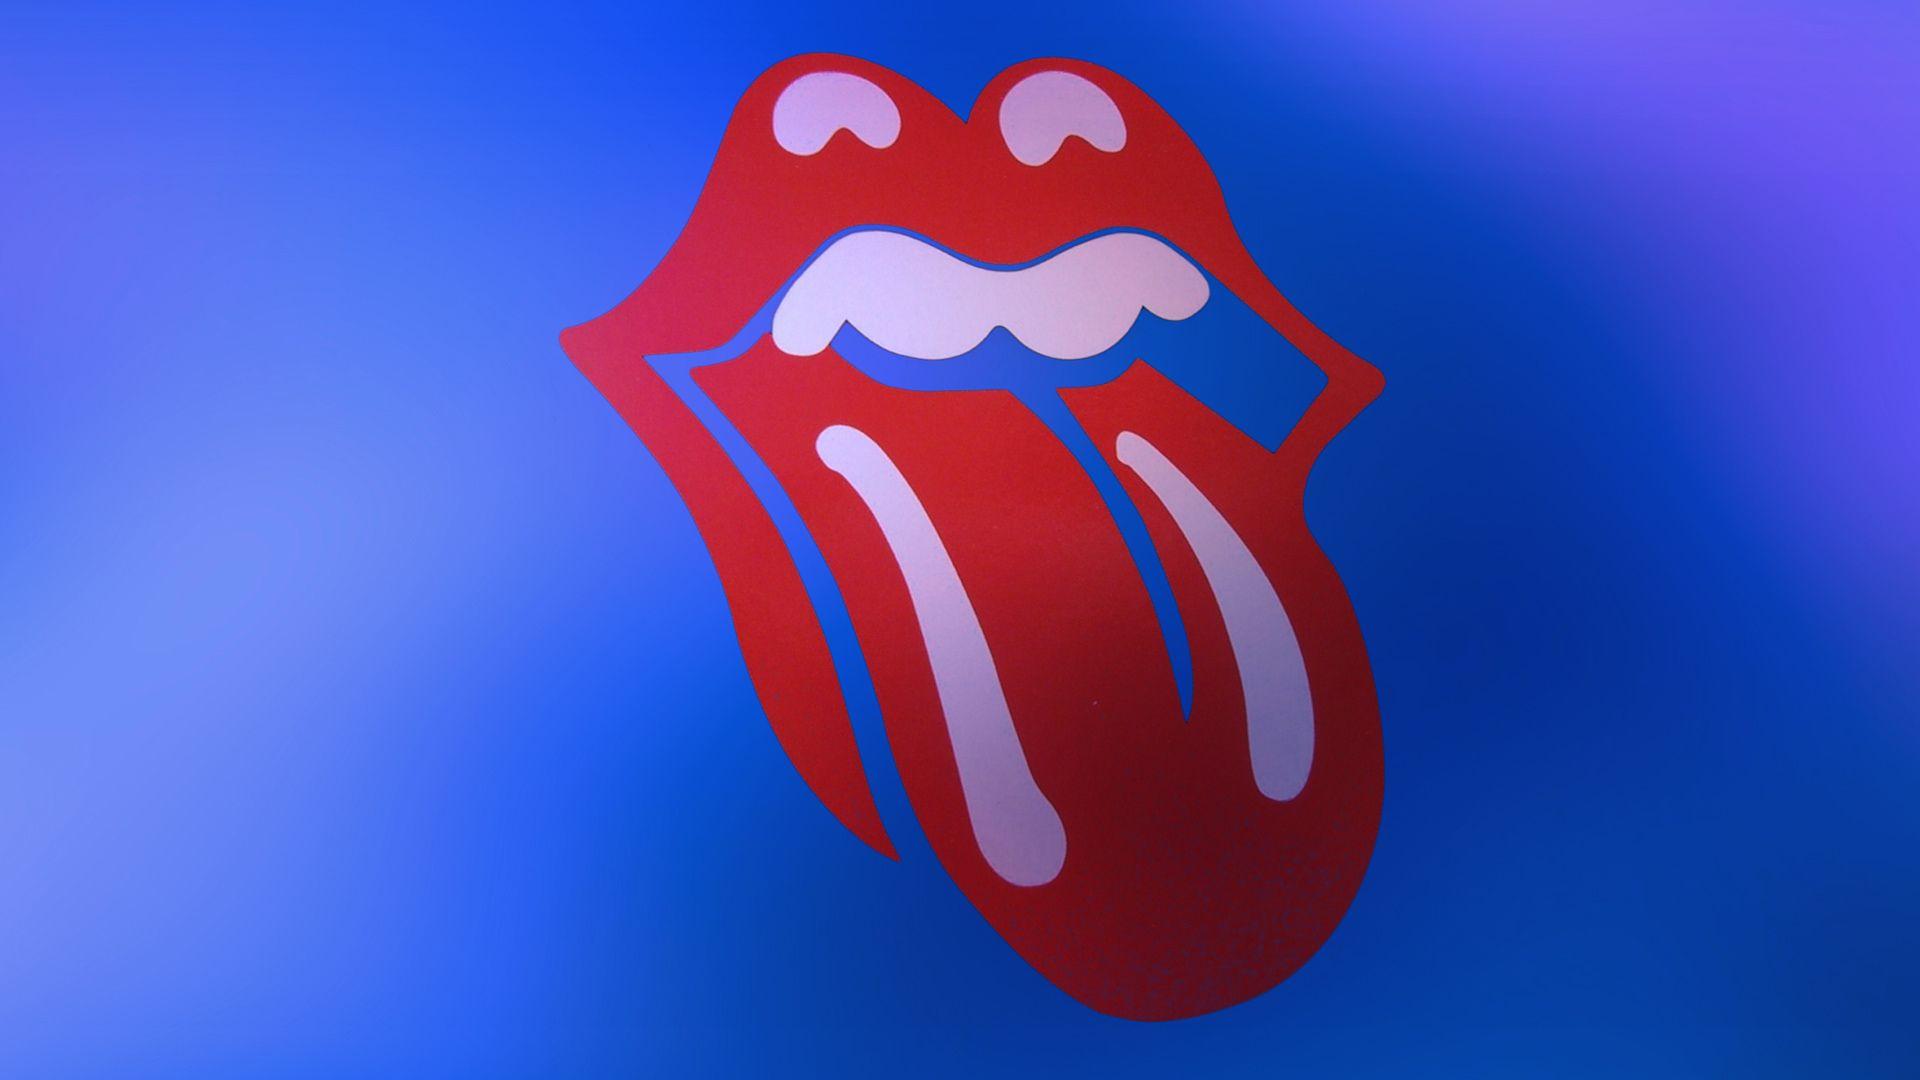 The Rolling Stones Computer Wallpaper, Desktop Background